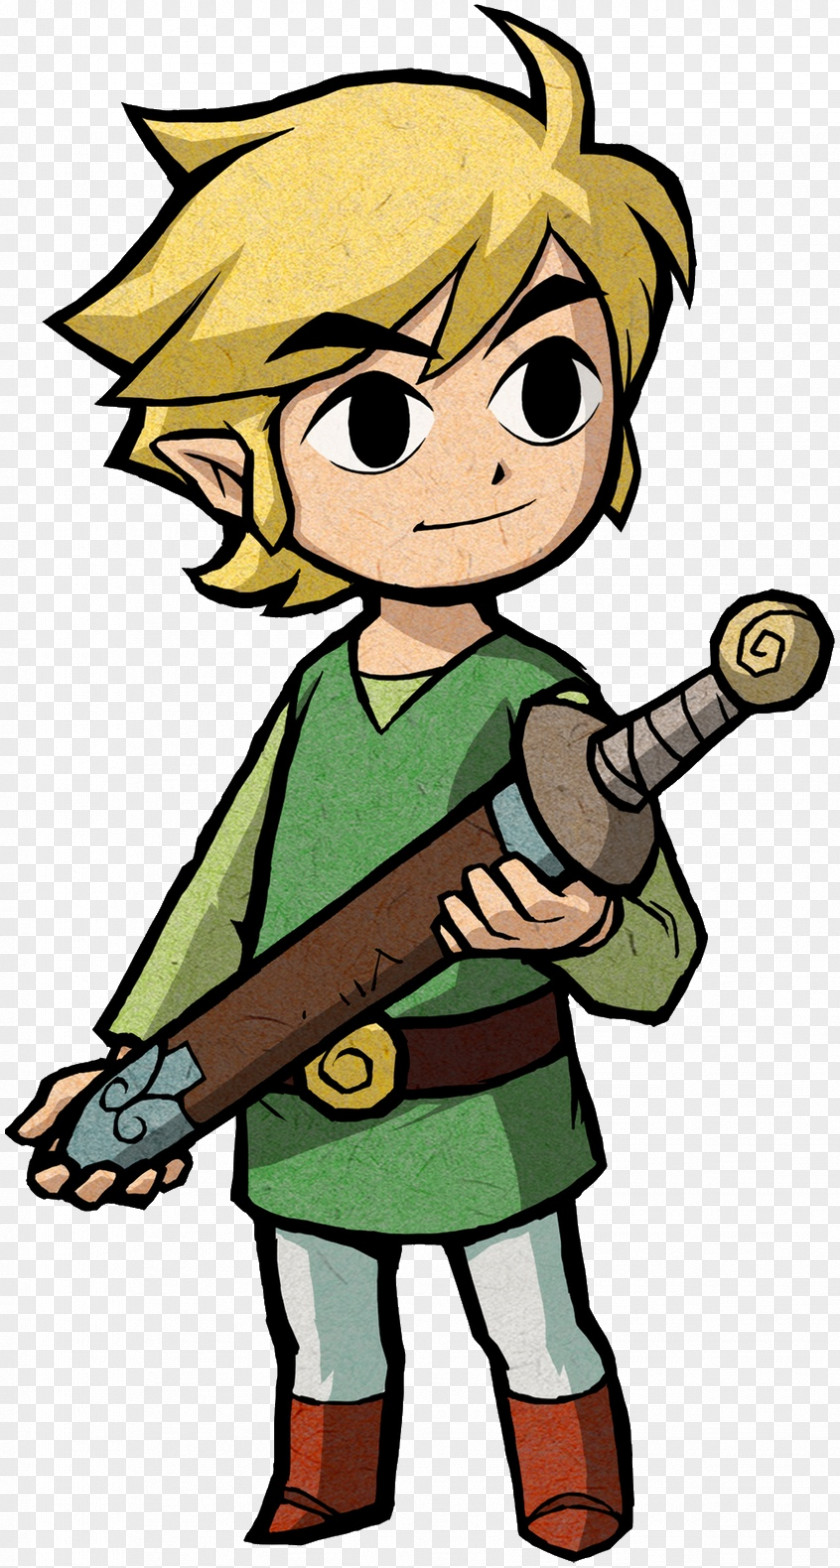 Zelda Link Picture The Legend Of Zelda: Minish Cap Ocarina Time Wind Waker Super Smash Bros. PNG